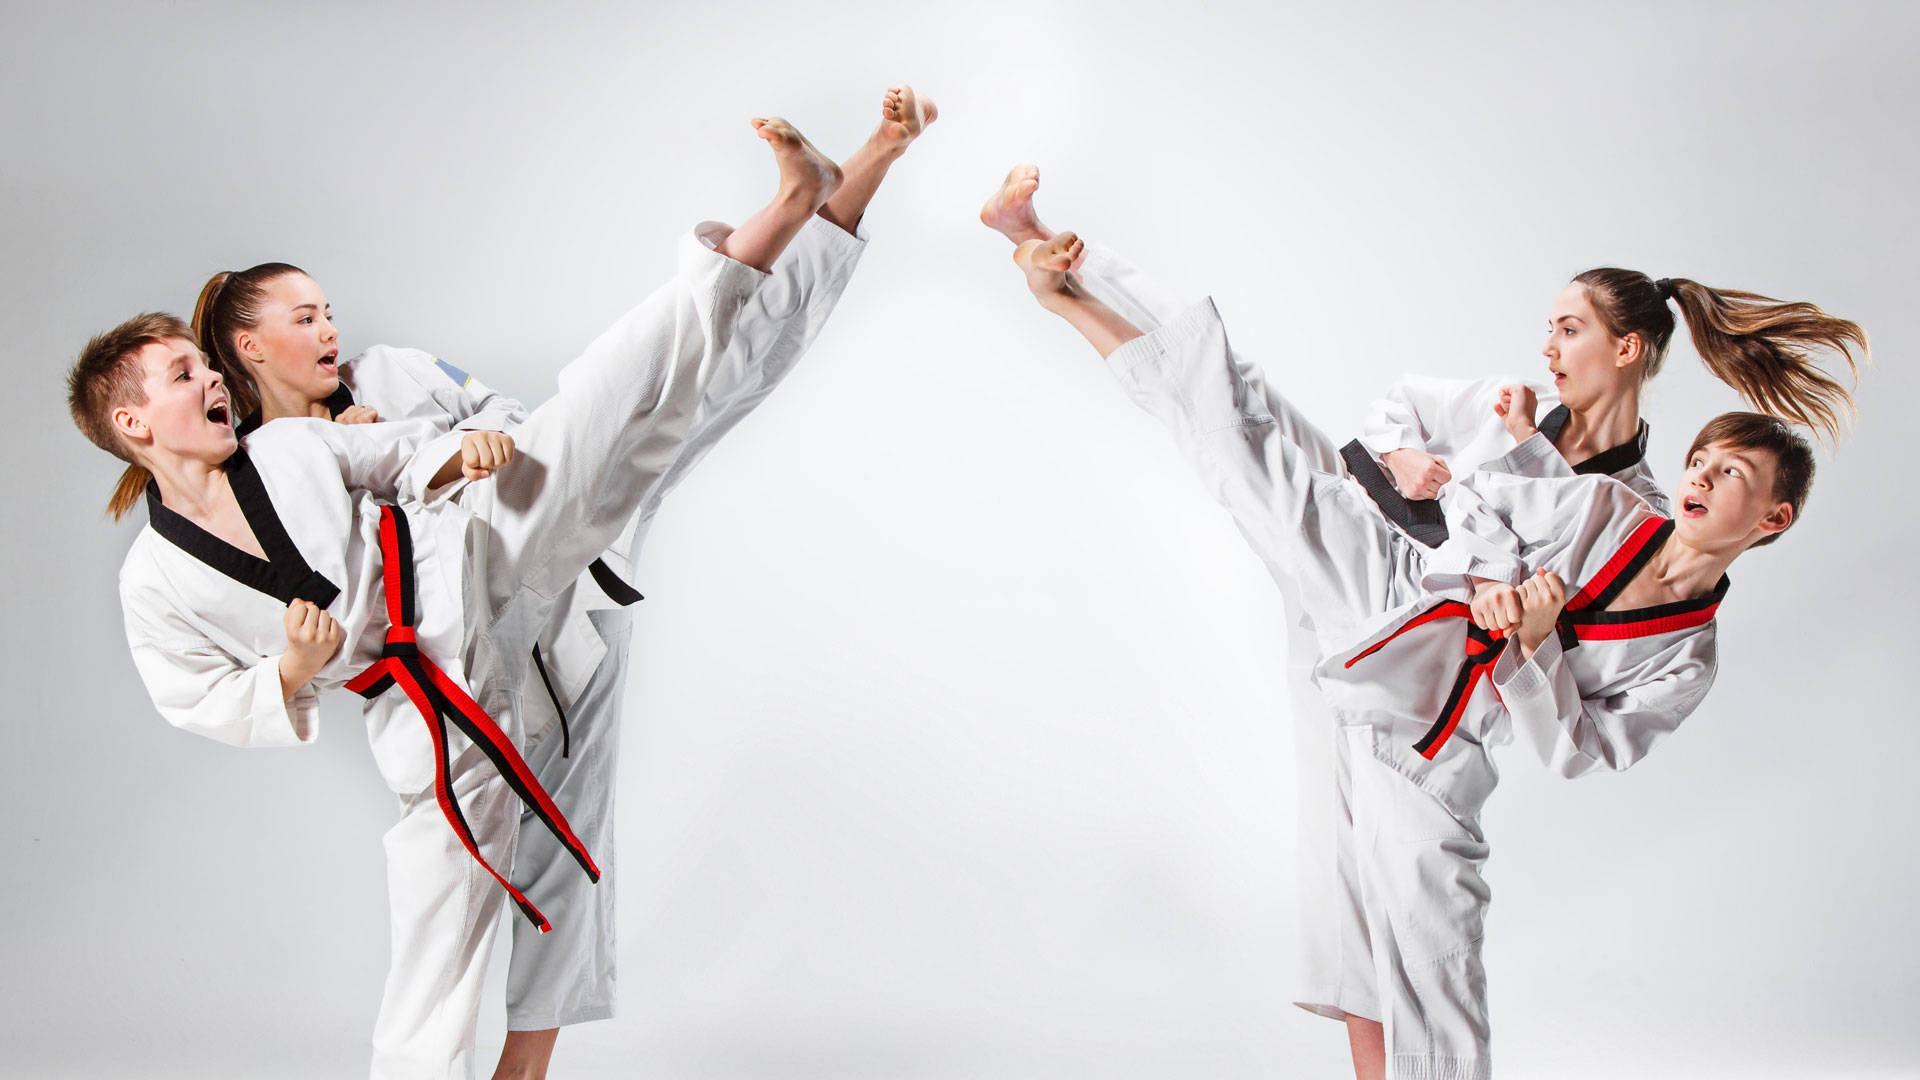 Karate Cậu Bé Đá Tạo Dáng Trên Nền Trắng Hình minh họa Sẵn có  Tải xuống Hình  ảnh Ngay bây giờ  Trẻ em  Tuổi Túc quyền đạo Bàn tay 